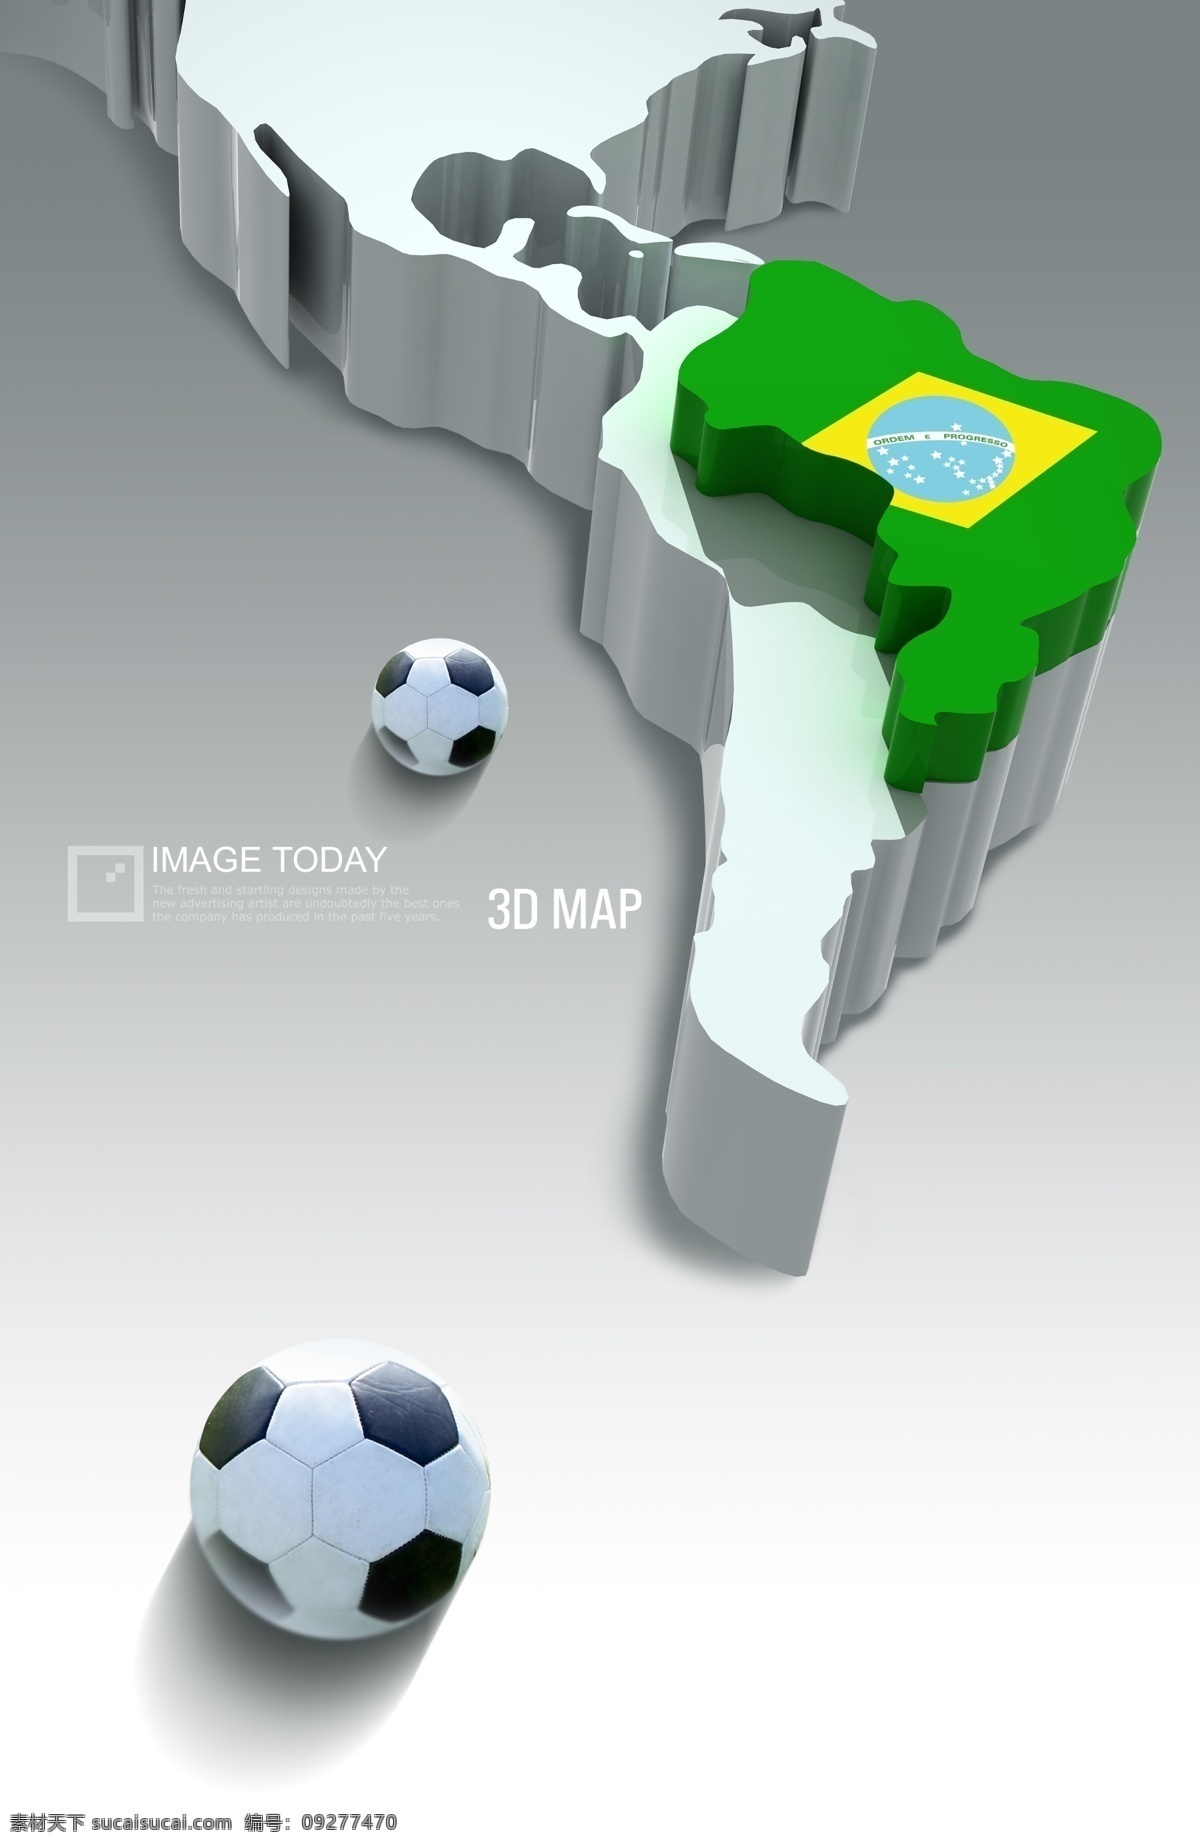 国际贸易 白领 成功人士 3d 科技蓝 3d巴西地图 足球之都 巴西国旗 南美 商务金融 科技金融 psd素材 白色